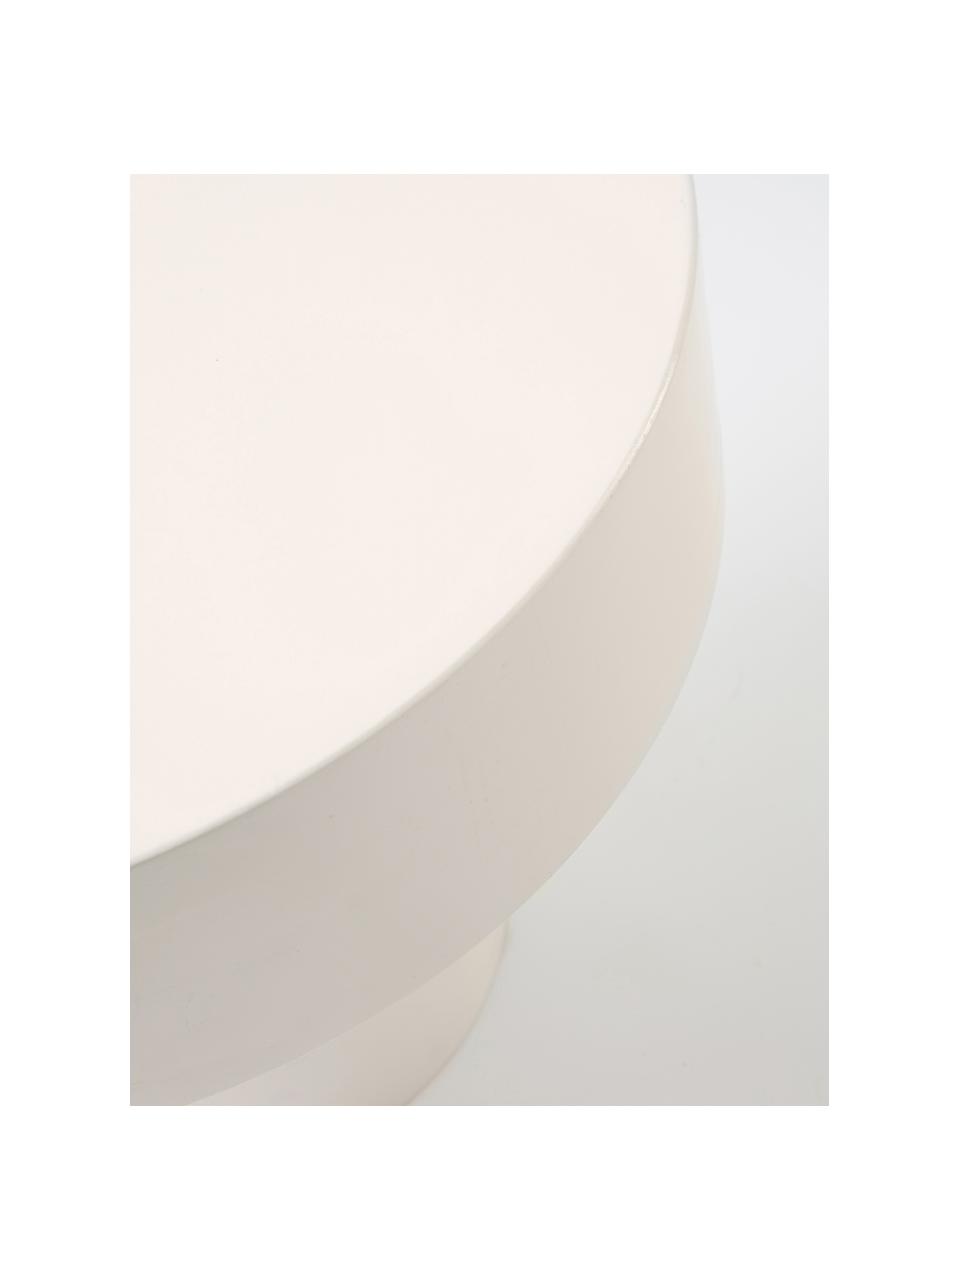 Runder Beistelltisch Baratti aus Mangoholz, Massives Mangoholz, Mangoholz, weiß lackiert, Ø 35 x H 35 cm